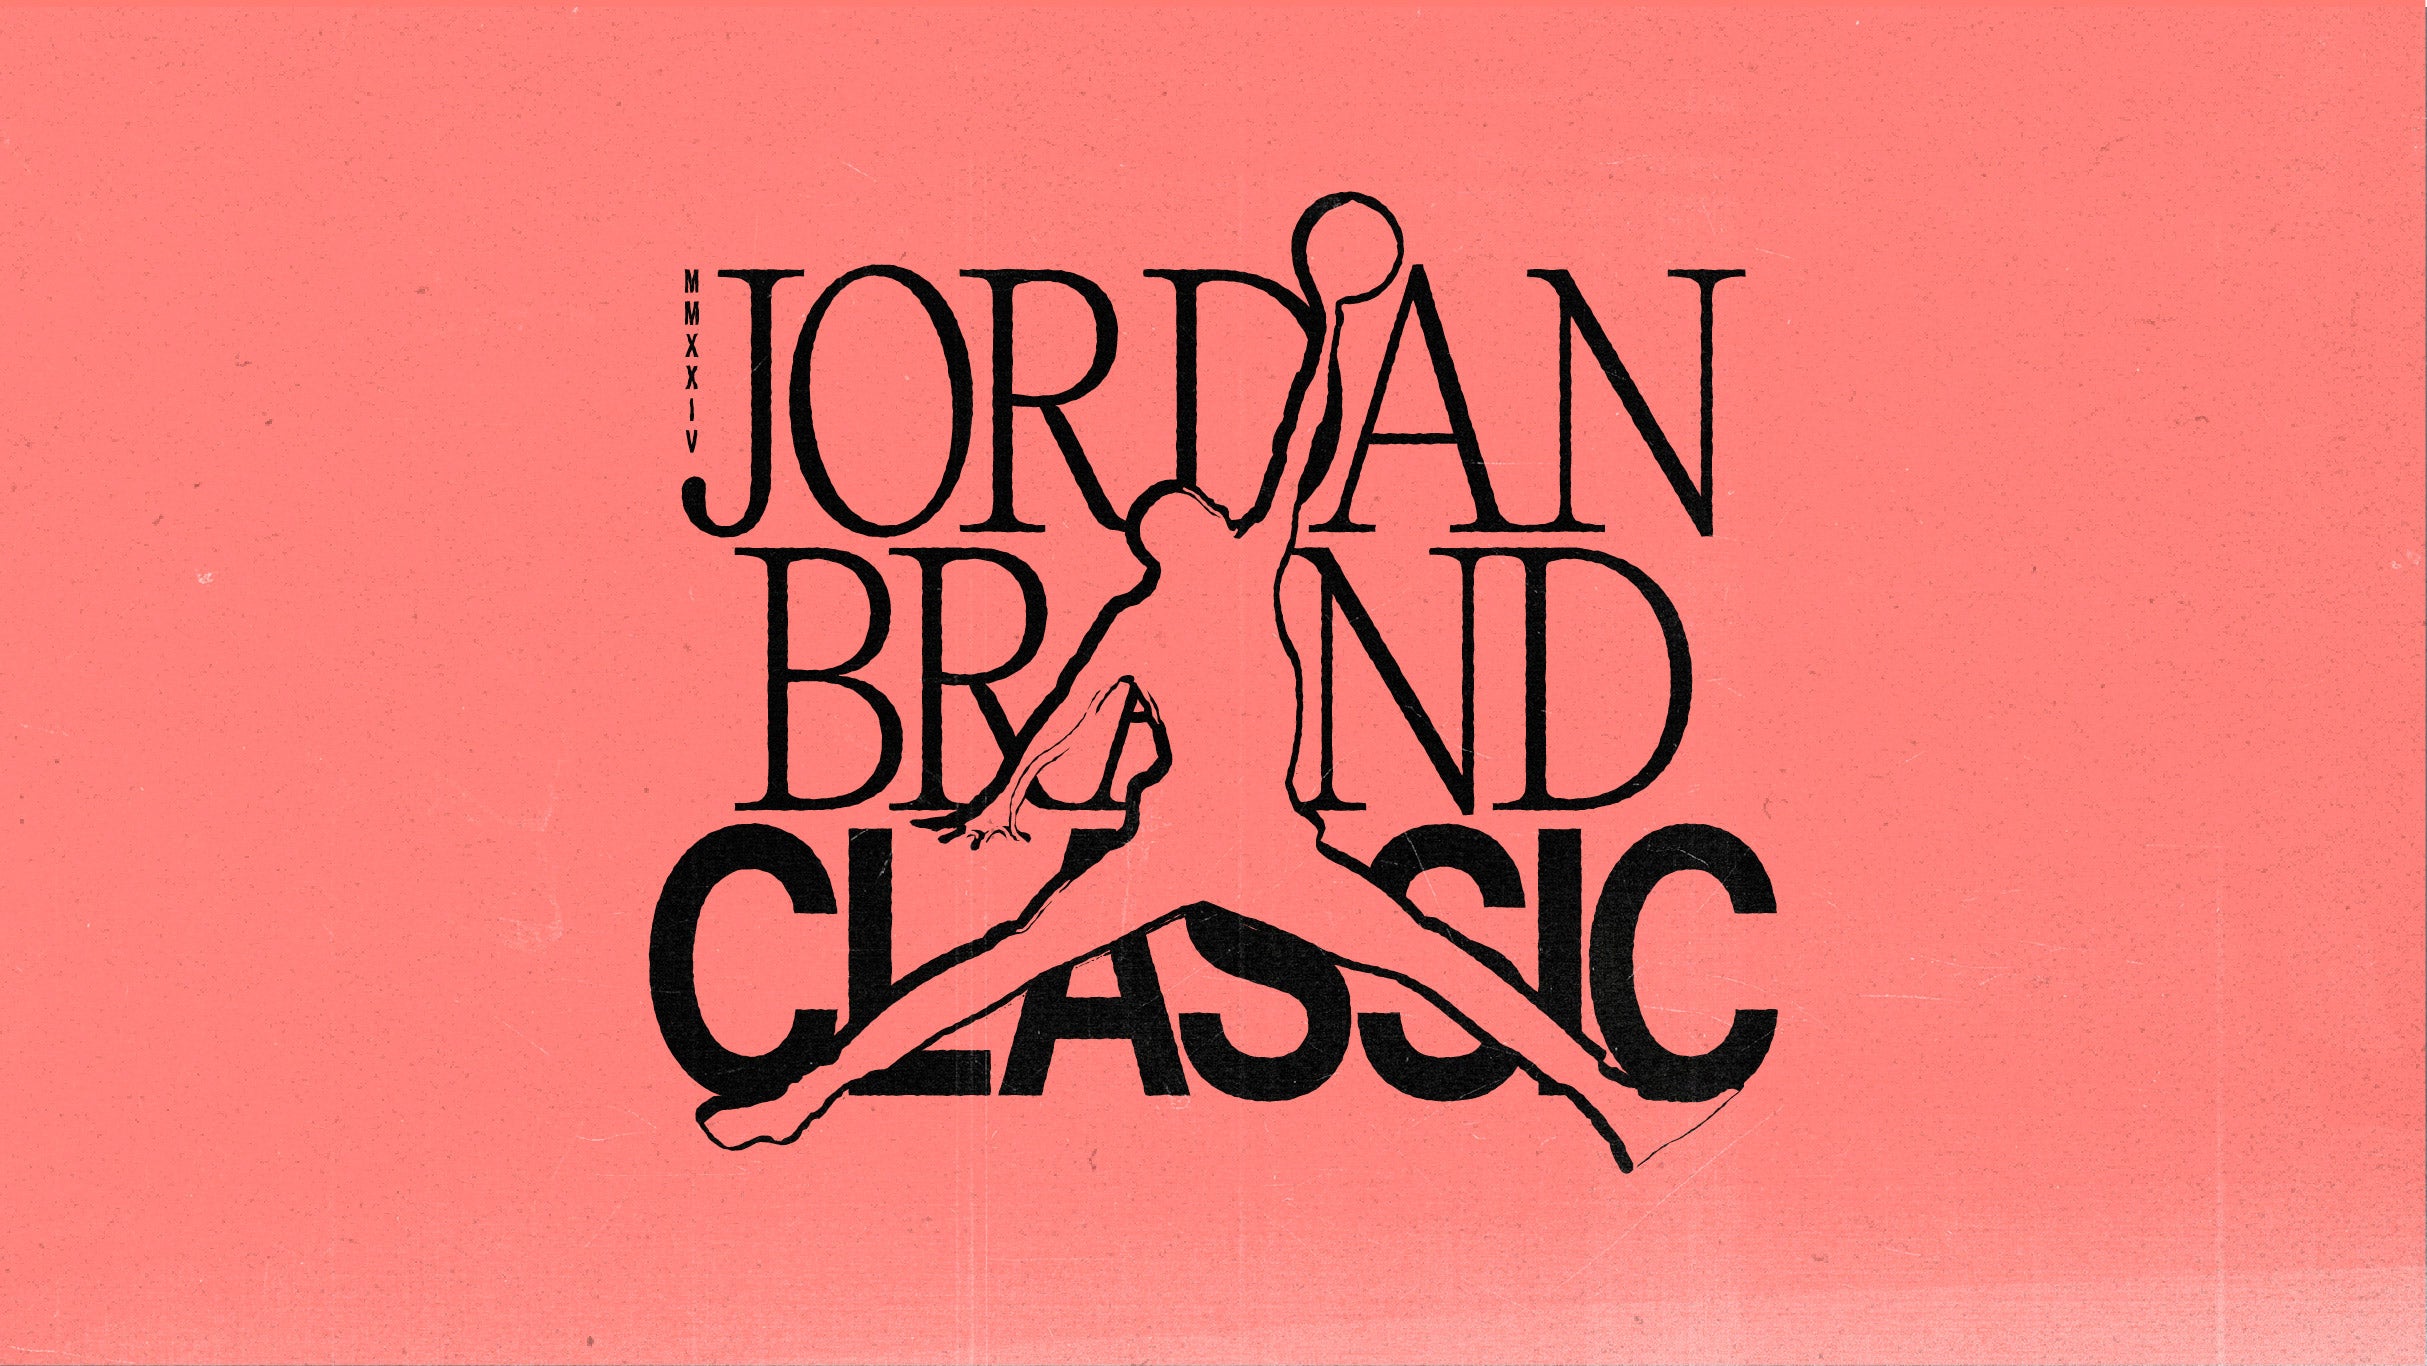 Jordan Brand Classic 2024 at Barclays Center